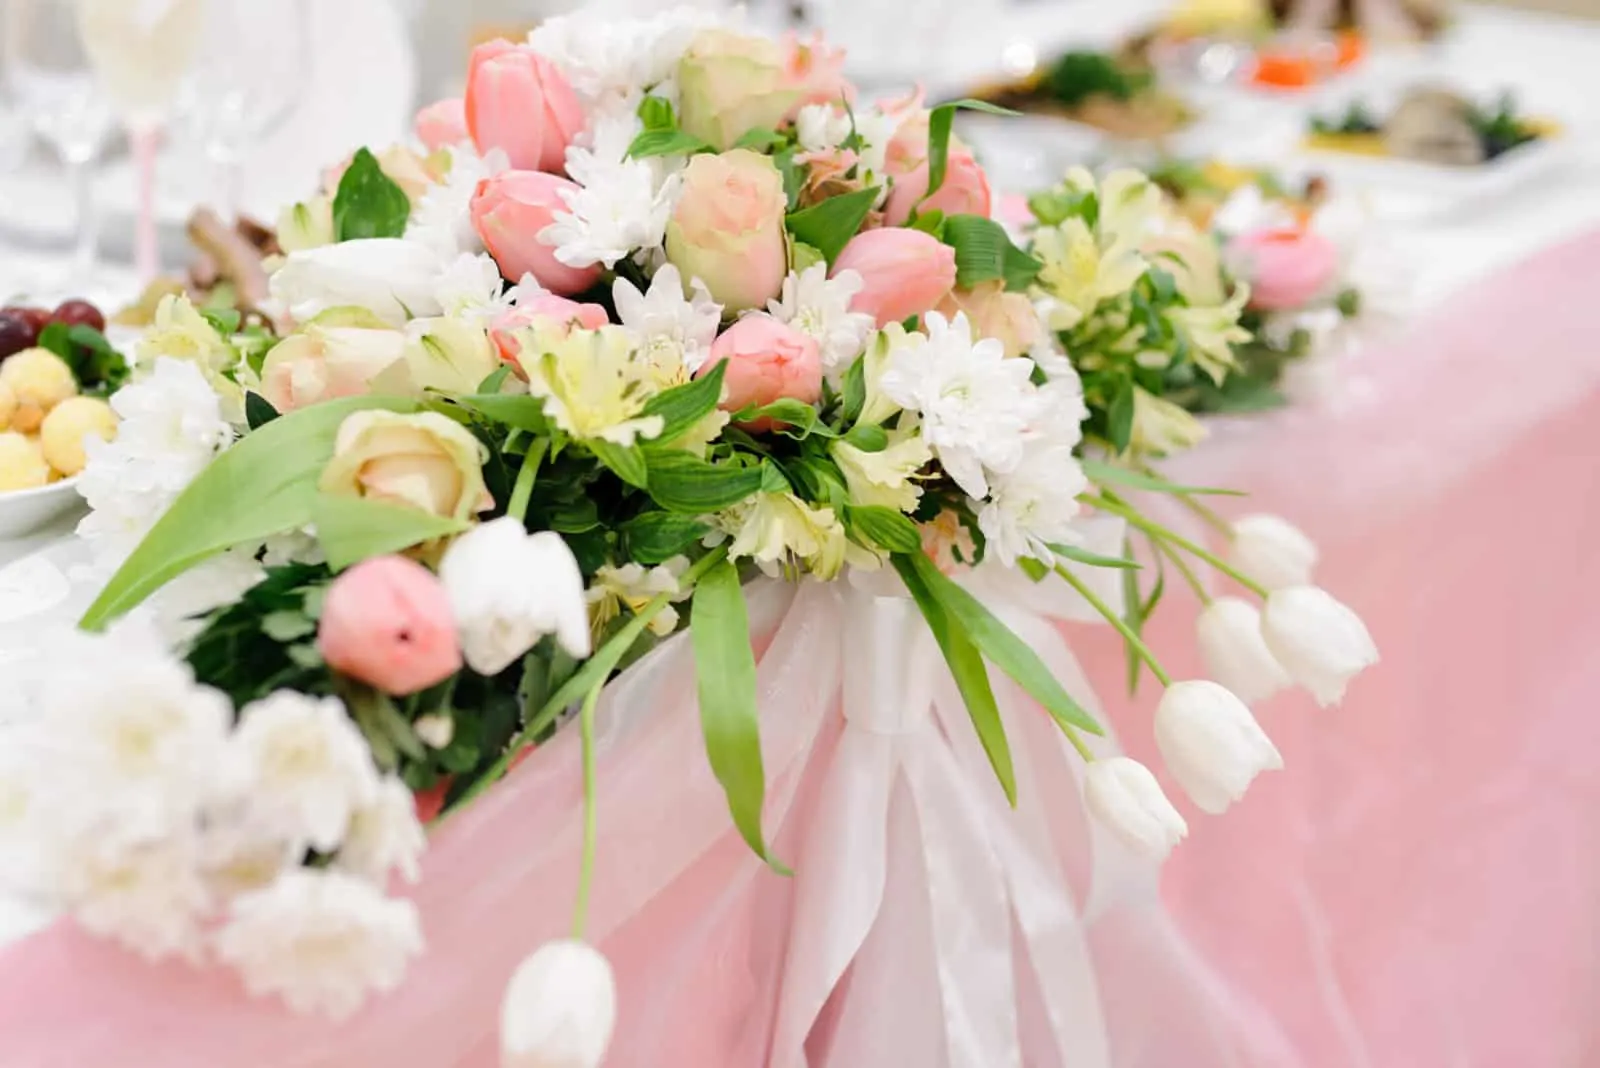 Dekoration des Hochzeitstisches mit Blumen